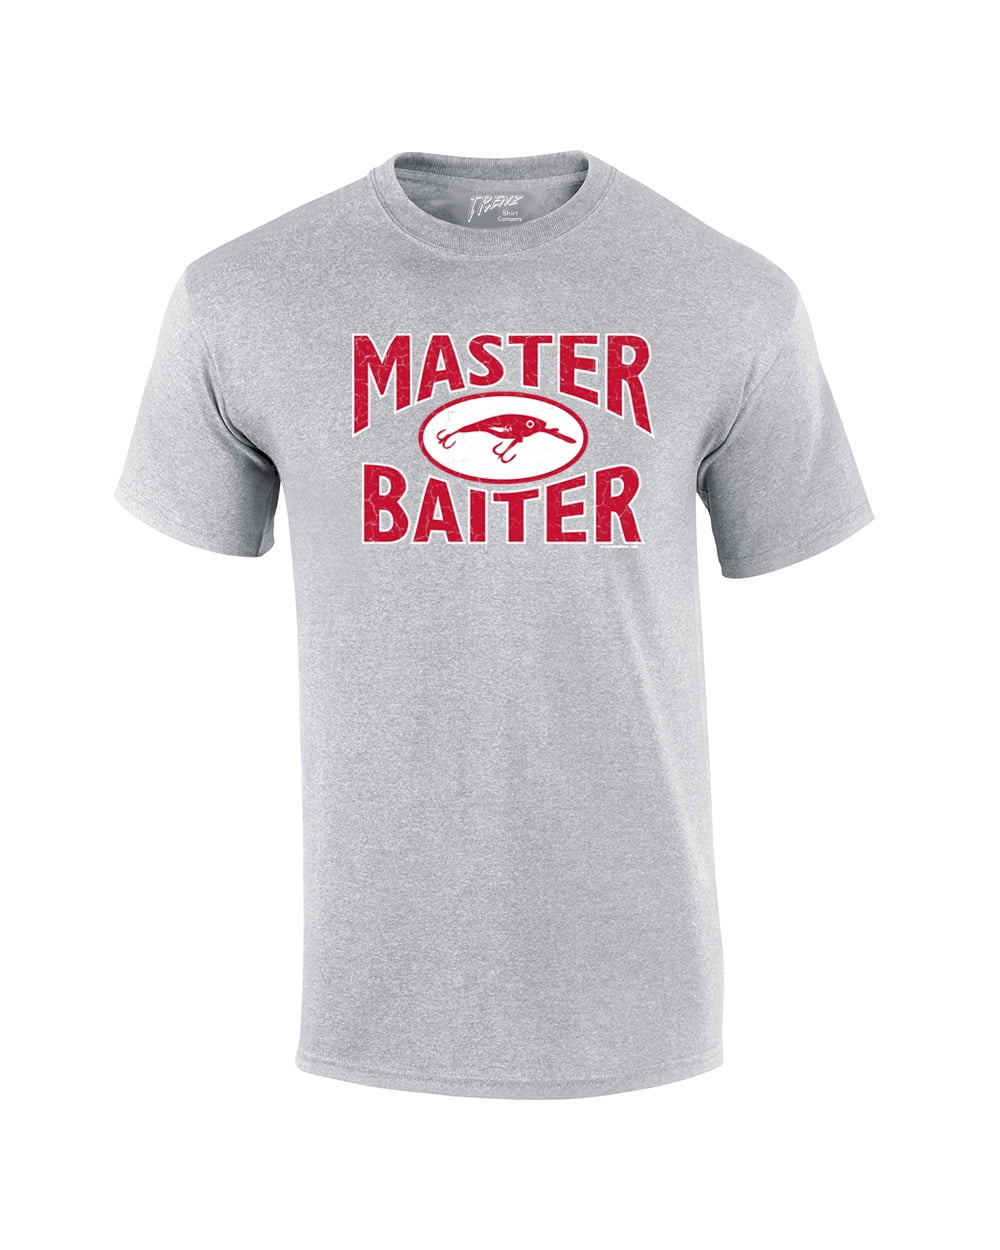 Fishing Short Sleeve T-shirt Master Baiter Hook Lure-Sports-Large